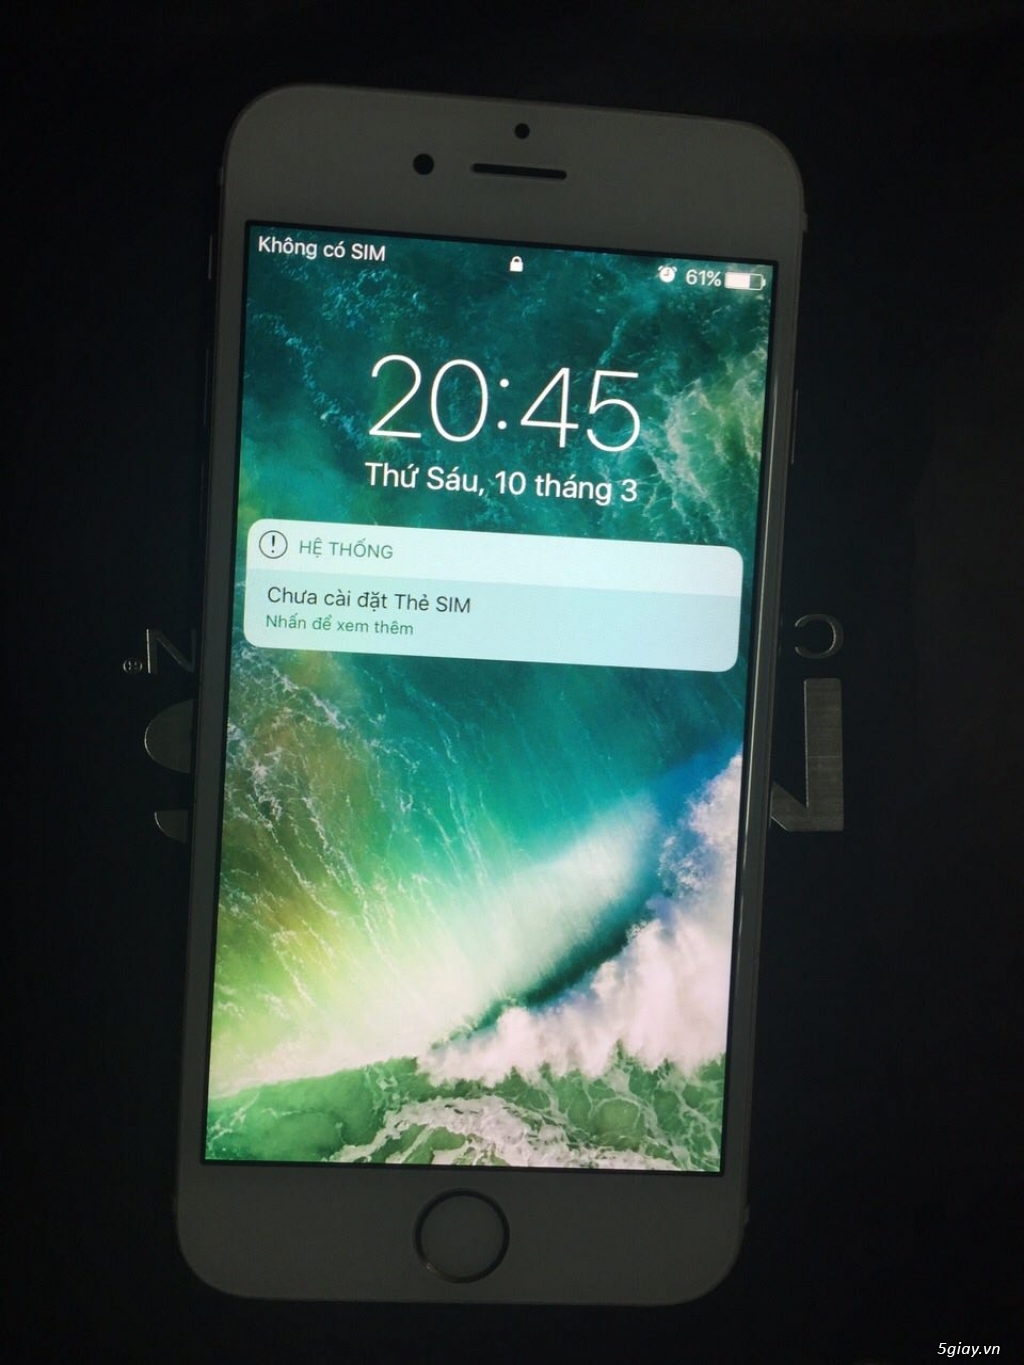 Iphone 6s 16GB Rose quốc tế còn bảo hành